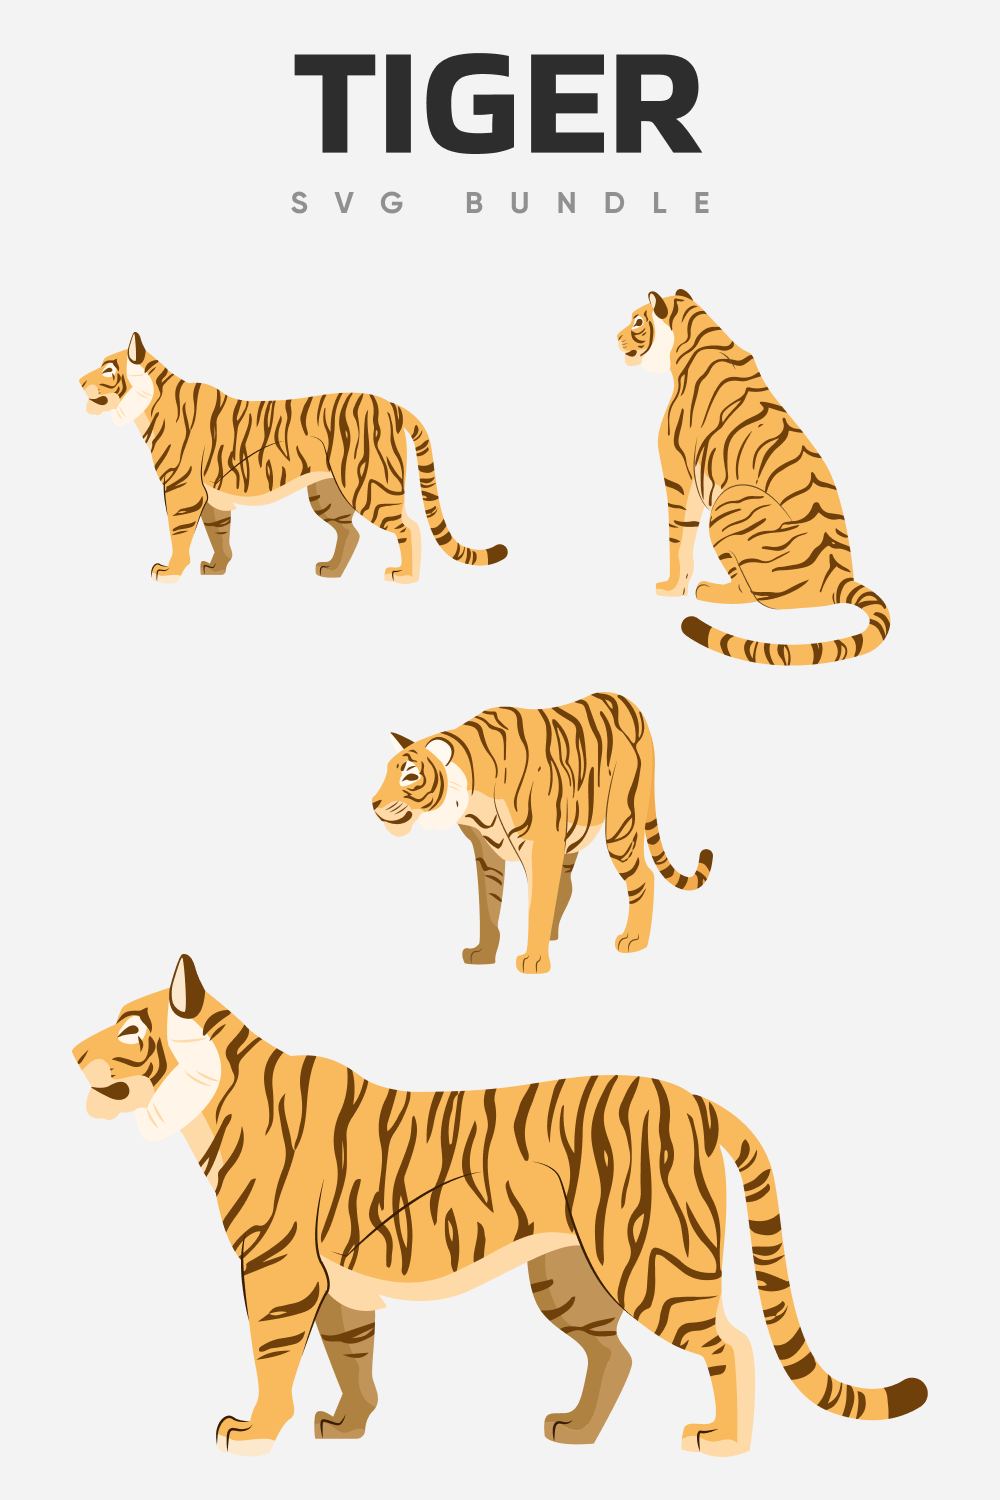 Tiger SVG bundle tiger.